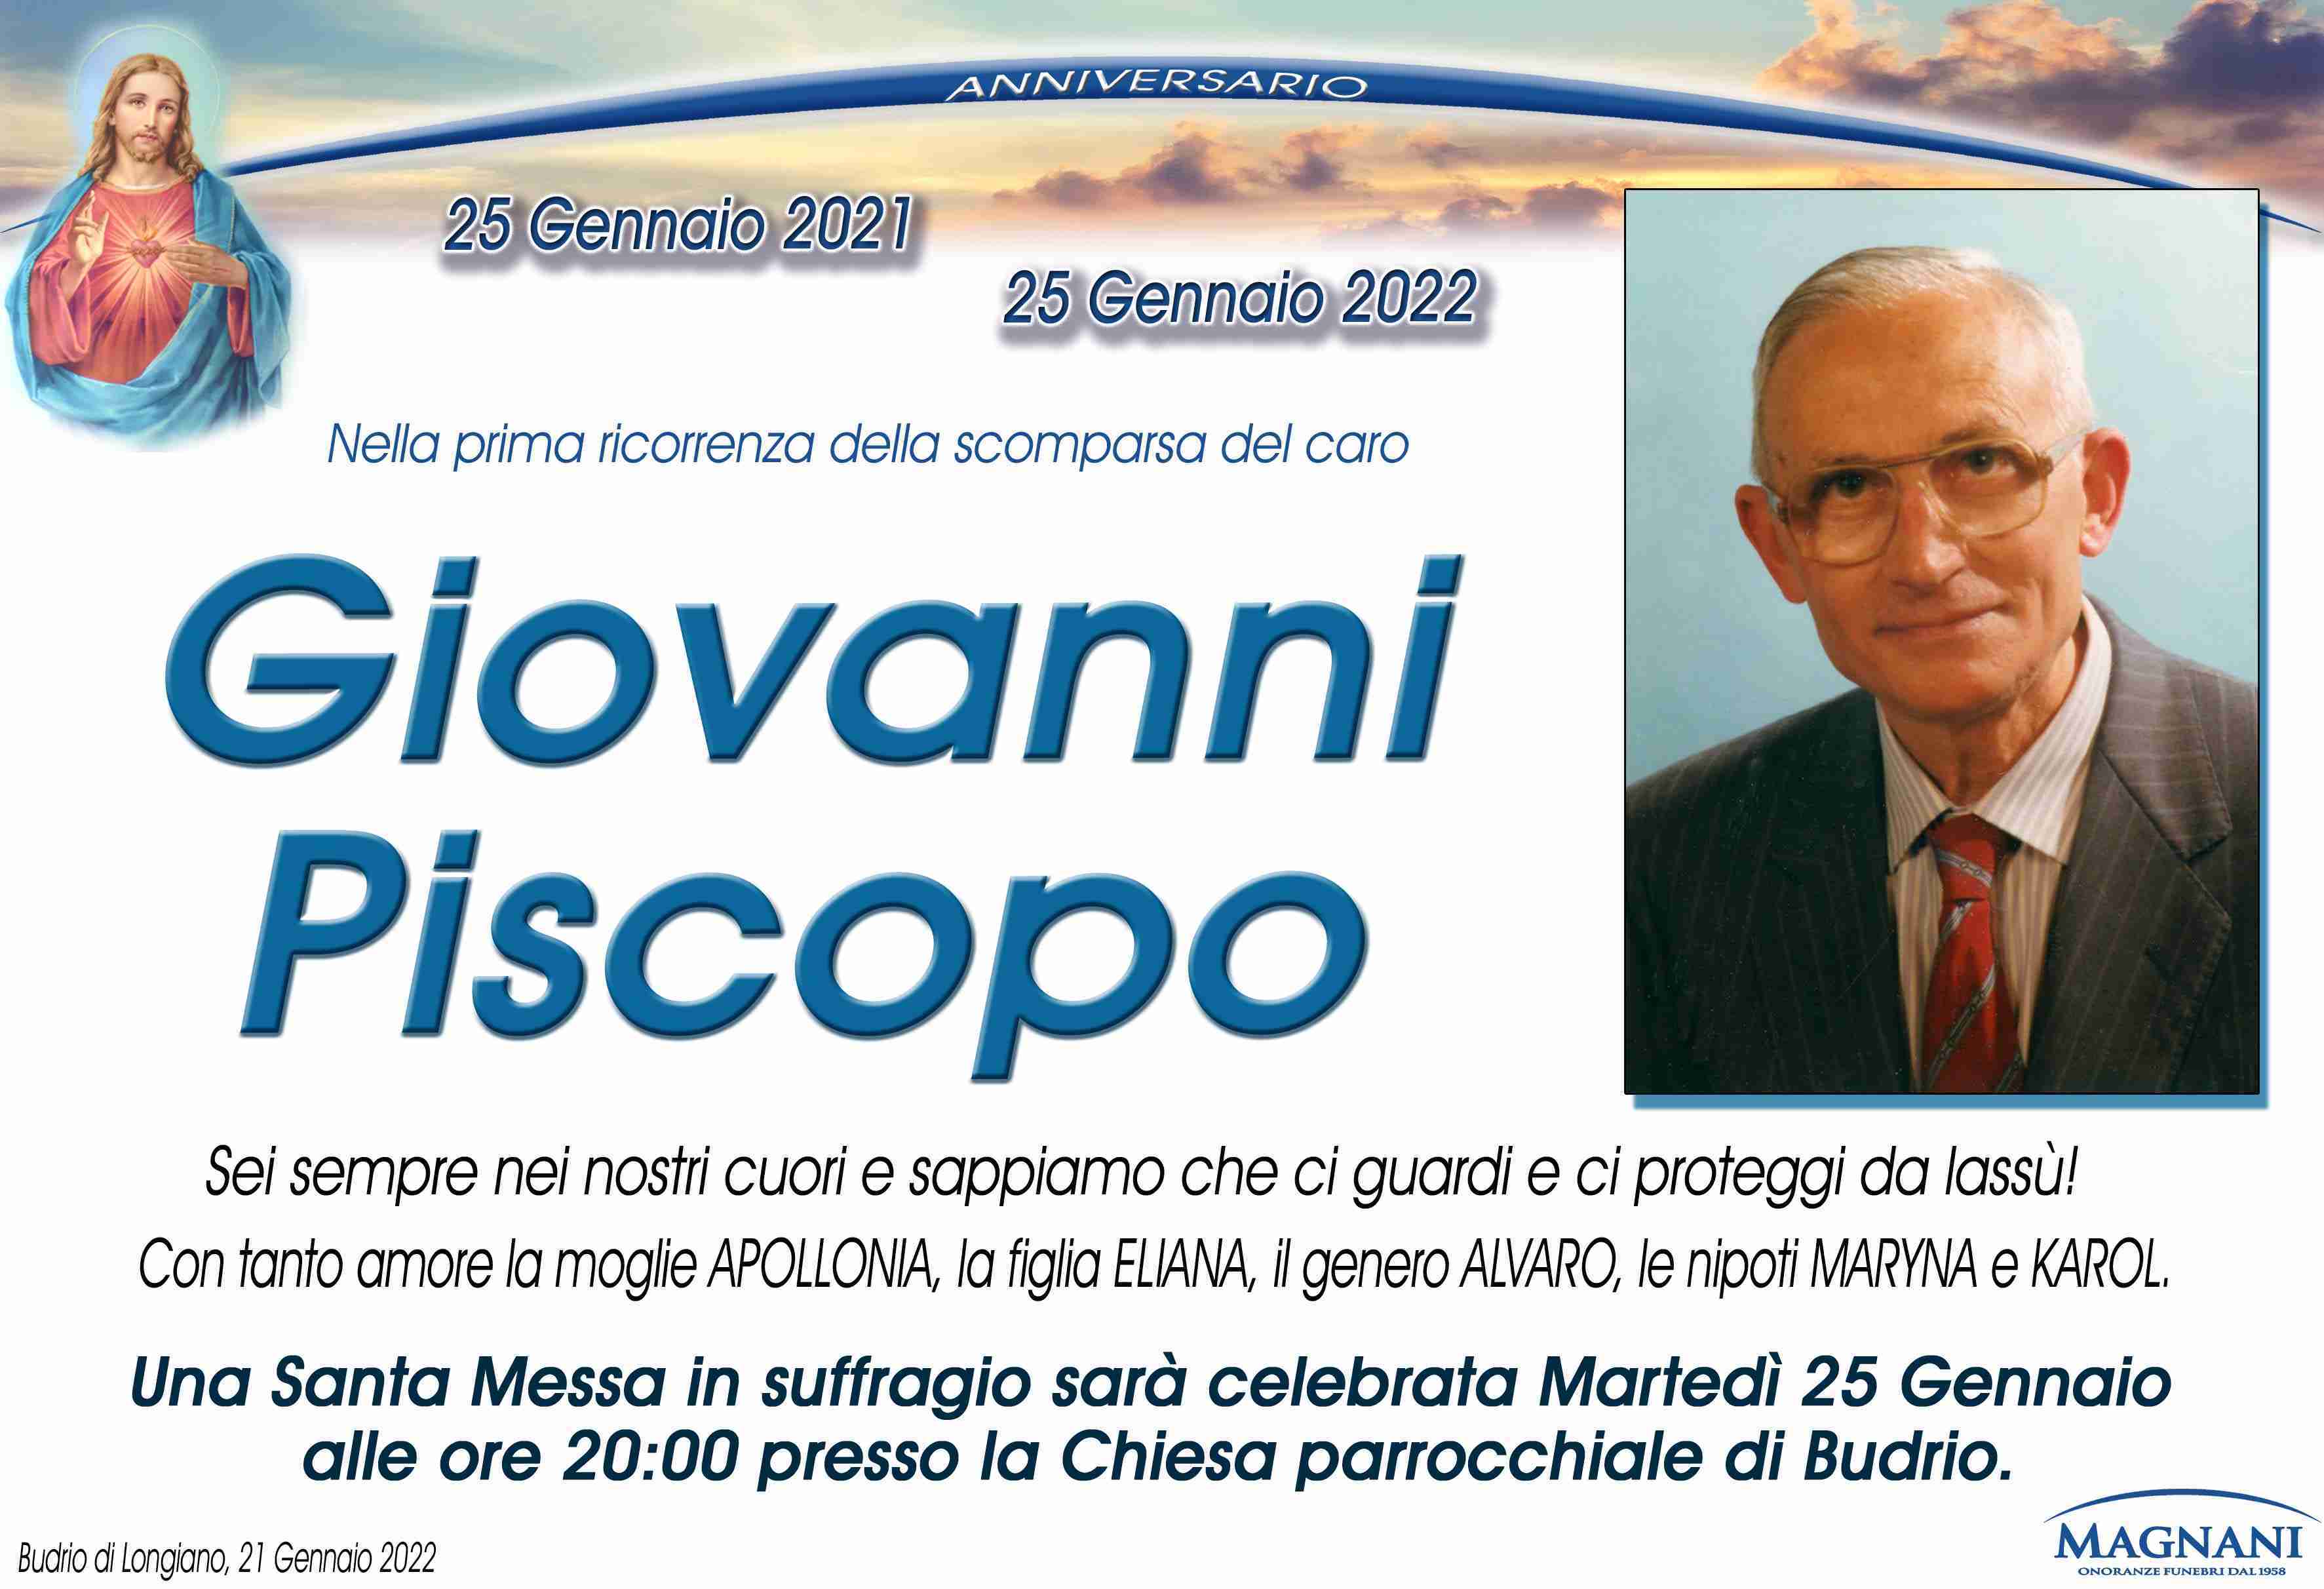 Giovanni Piscopo